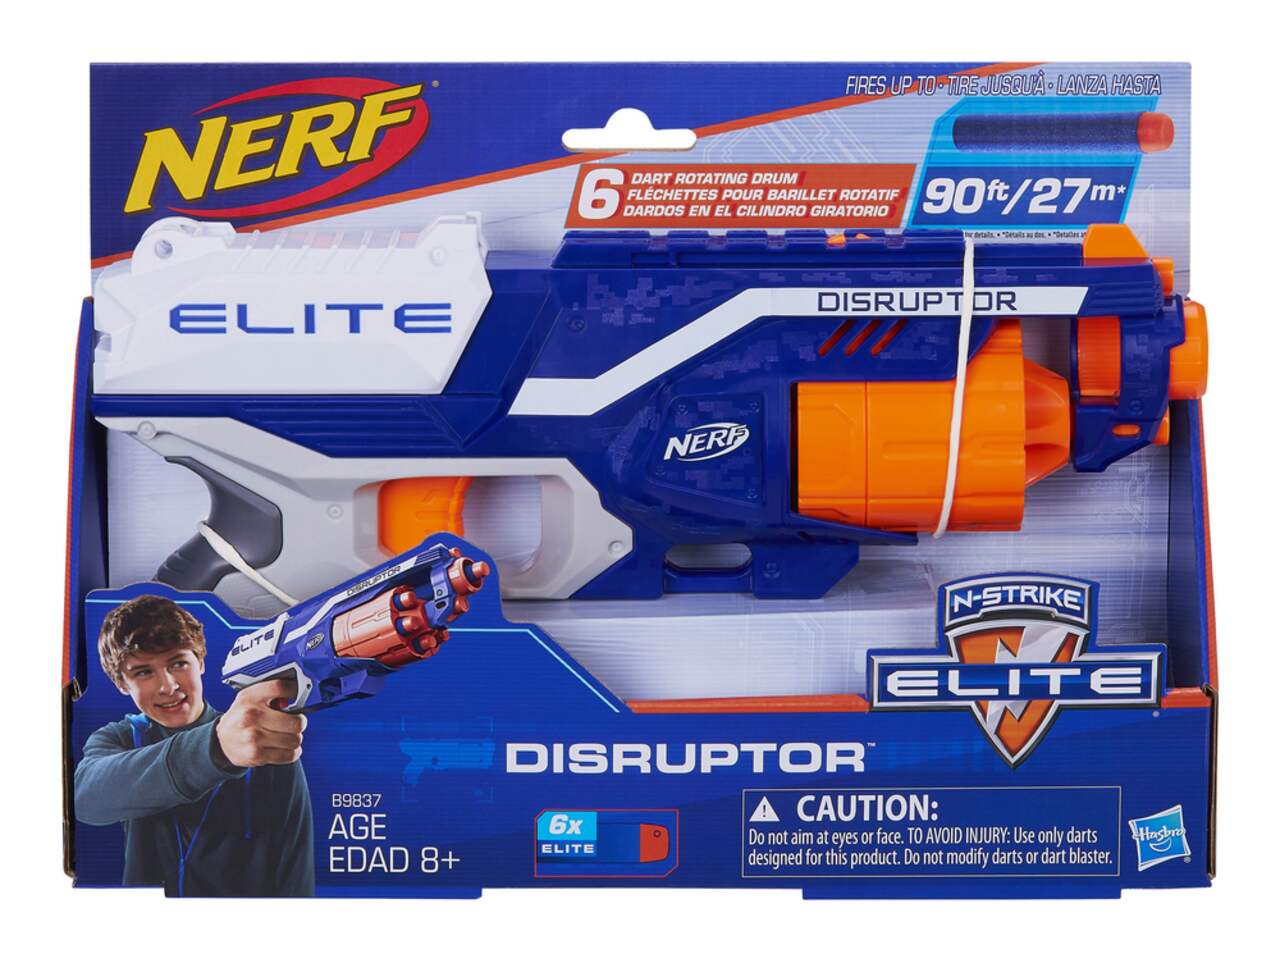 Nerf - elite 2.0 - blaster eaglepoint rd-8, barillet 8 fléchettes, viseur  et canon amovibles, 16 fléchettes nerf NERF Pas Cher 